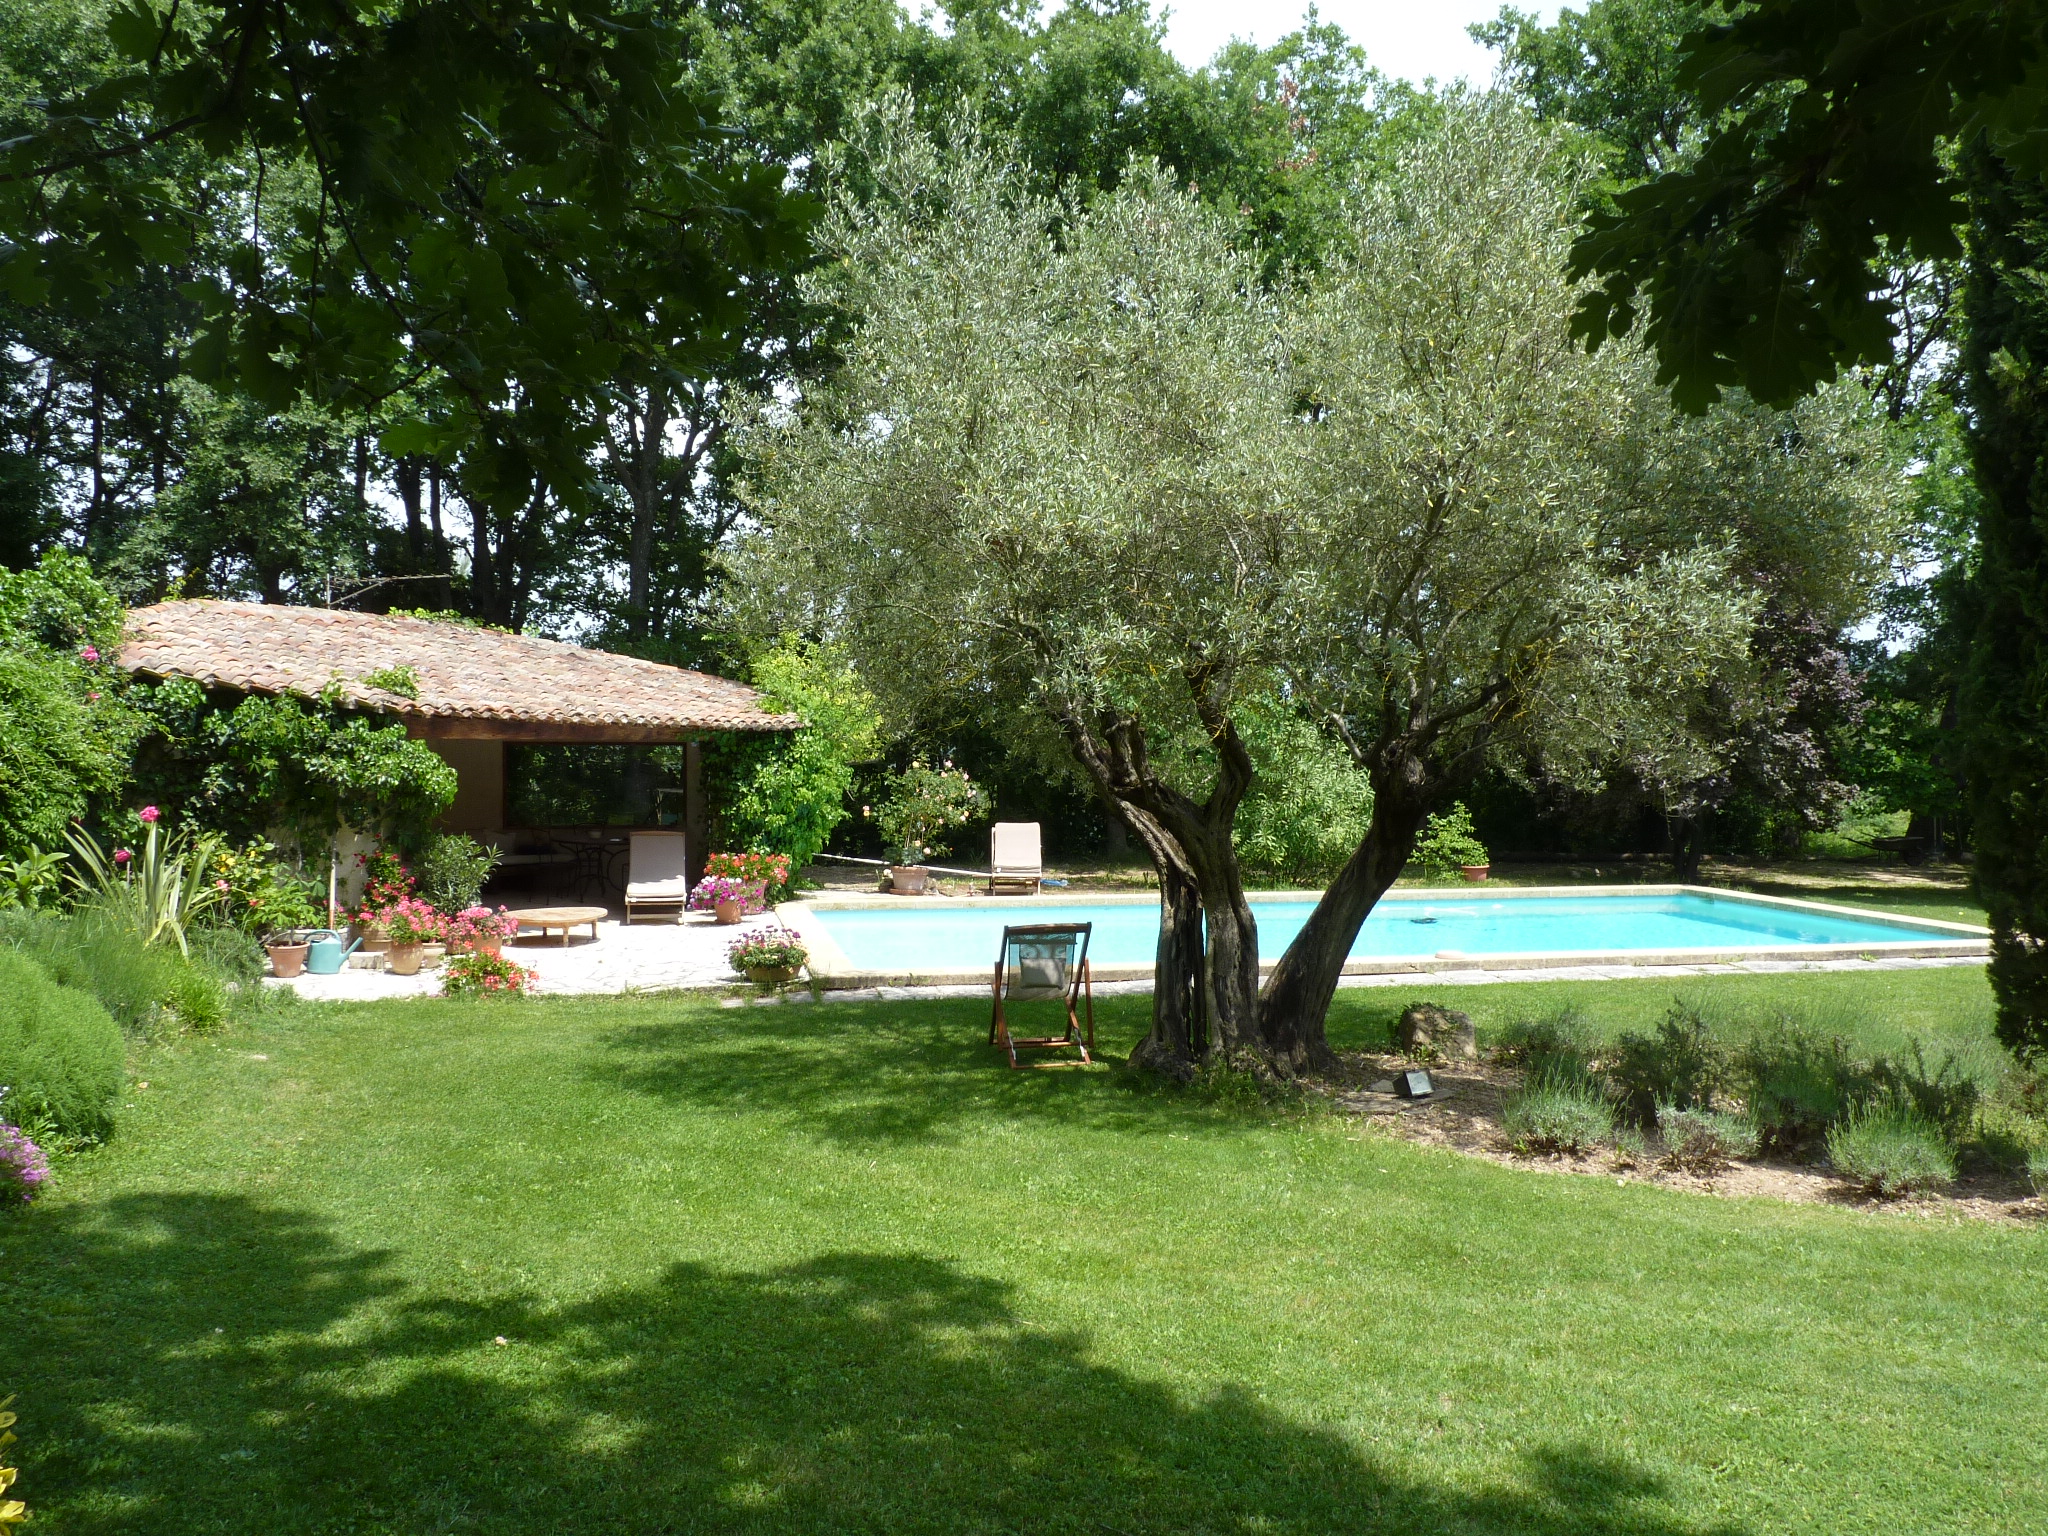 Location maison vacances Provence, Aix en Provence